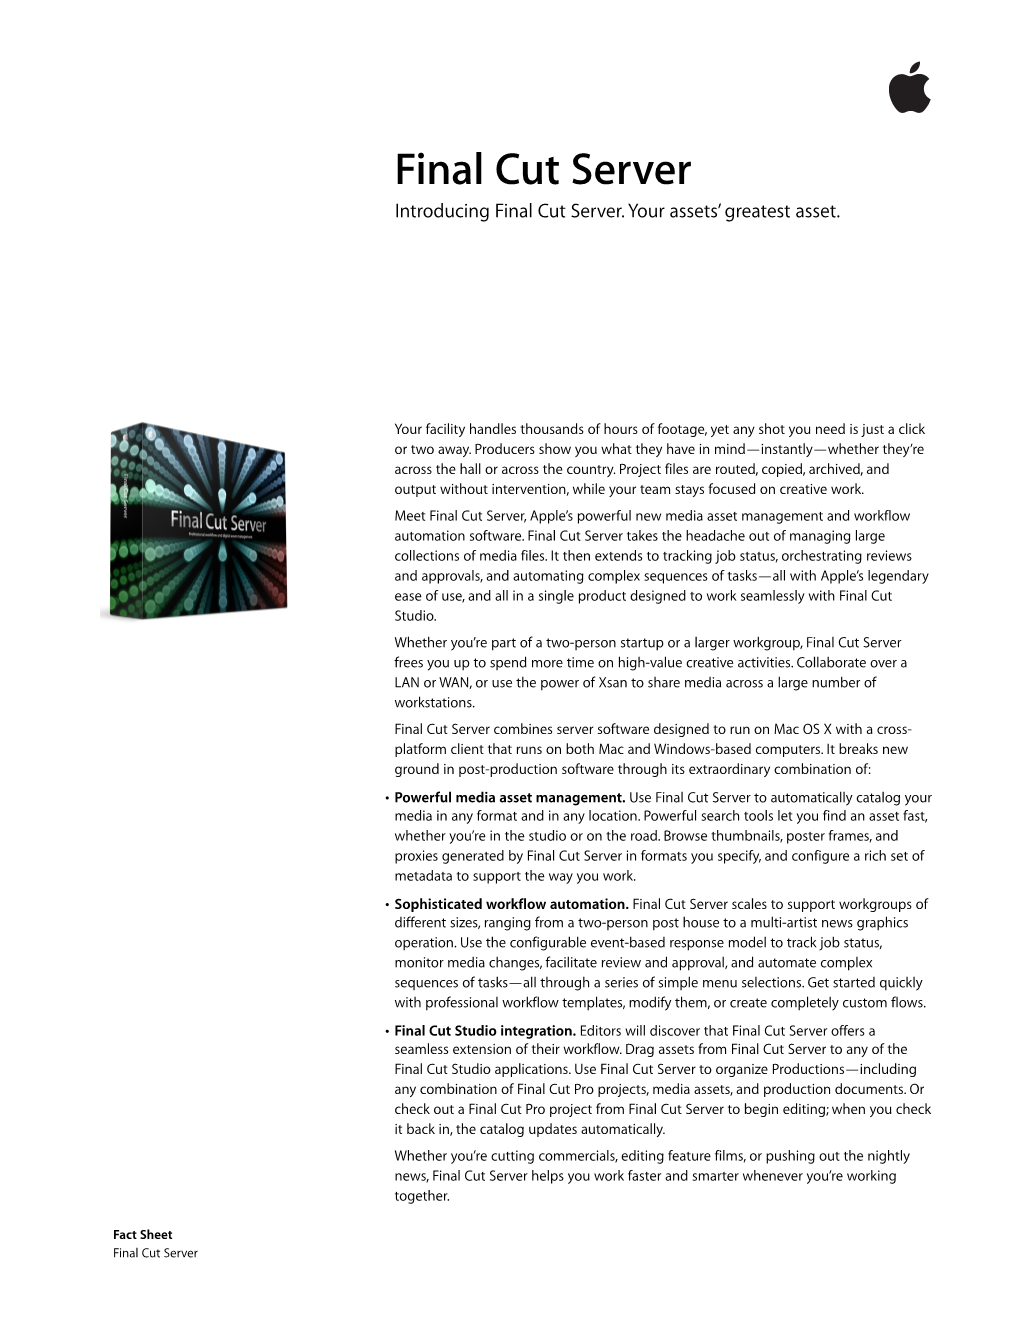 L342468B Final Cut Server Fact Sheet